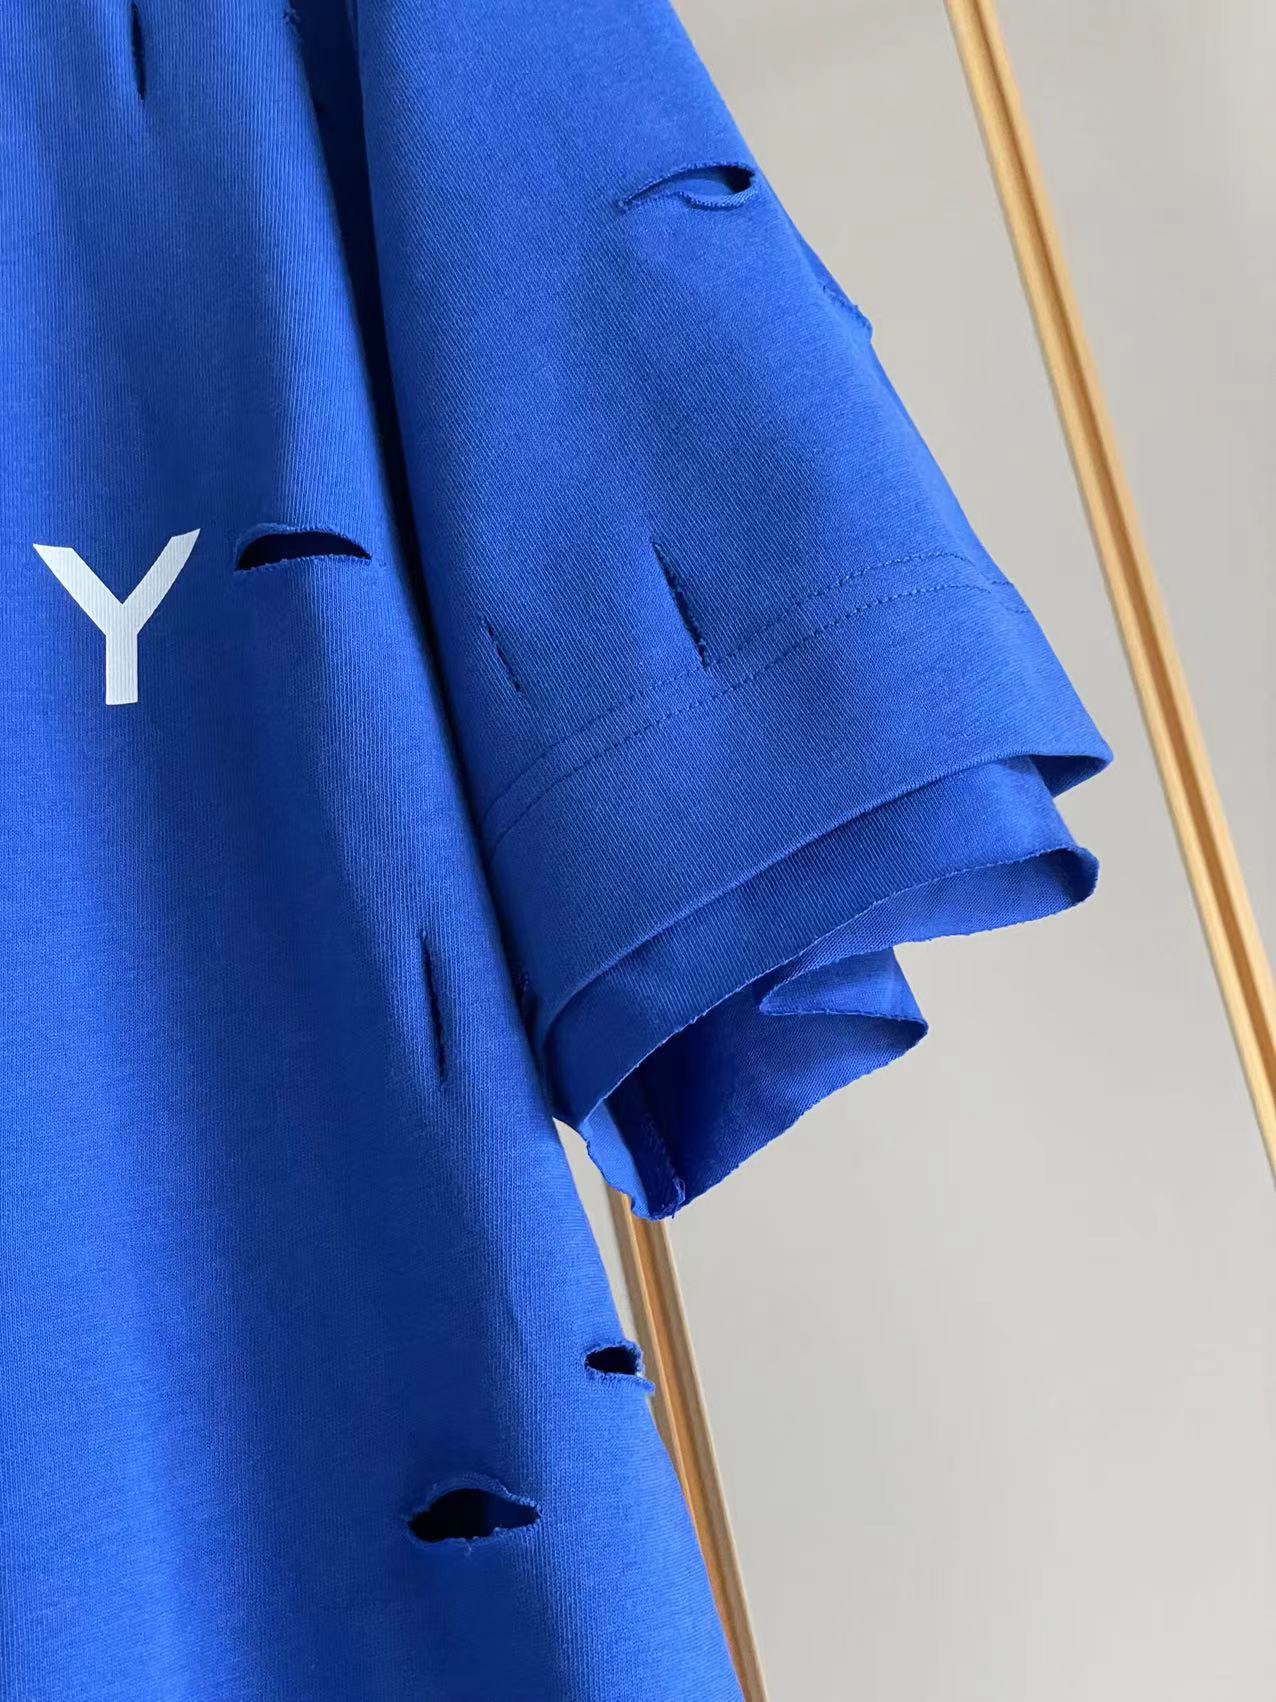 ジバンシートップススーパーコピー 純綿 Tシャツ 半袖 シンプル ダメージ加工のデザイン 5色可選 ブルー_4